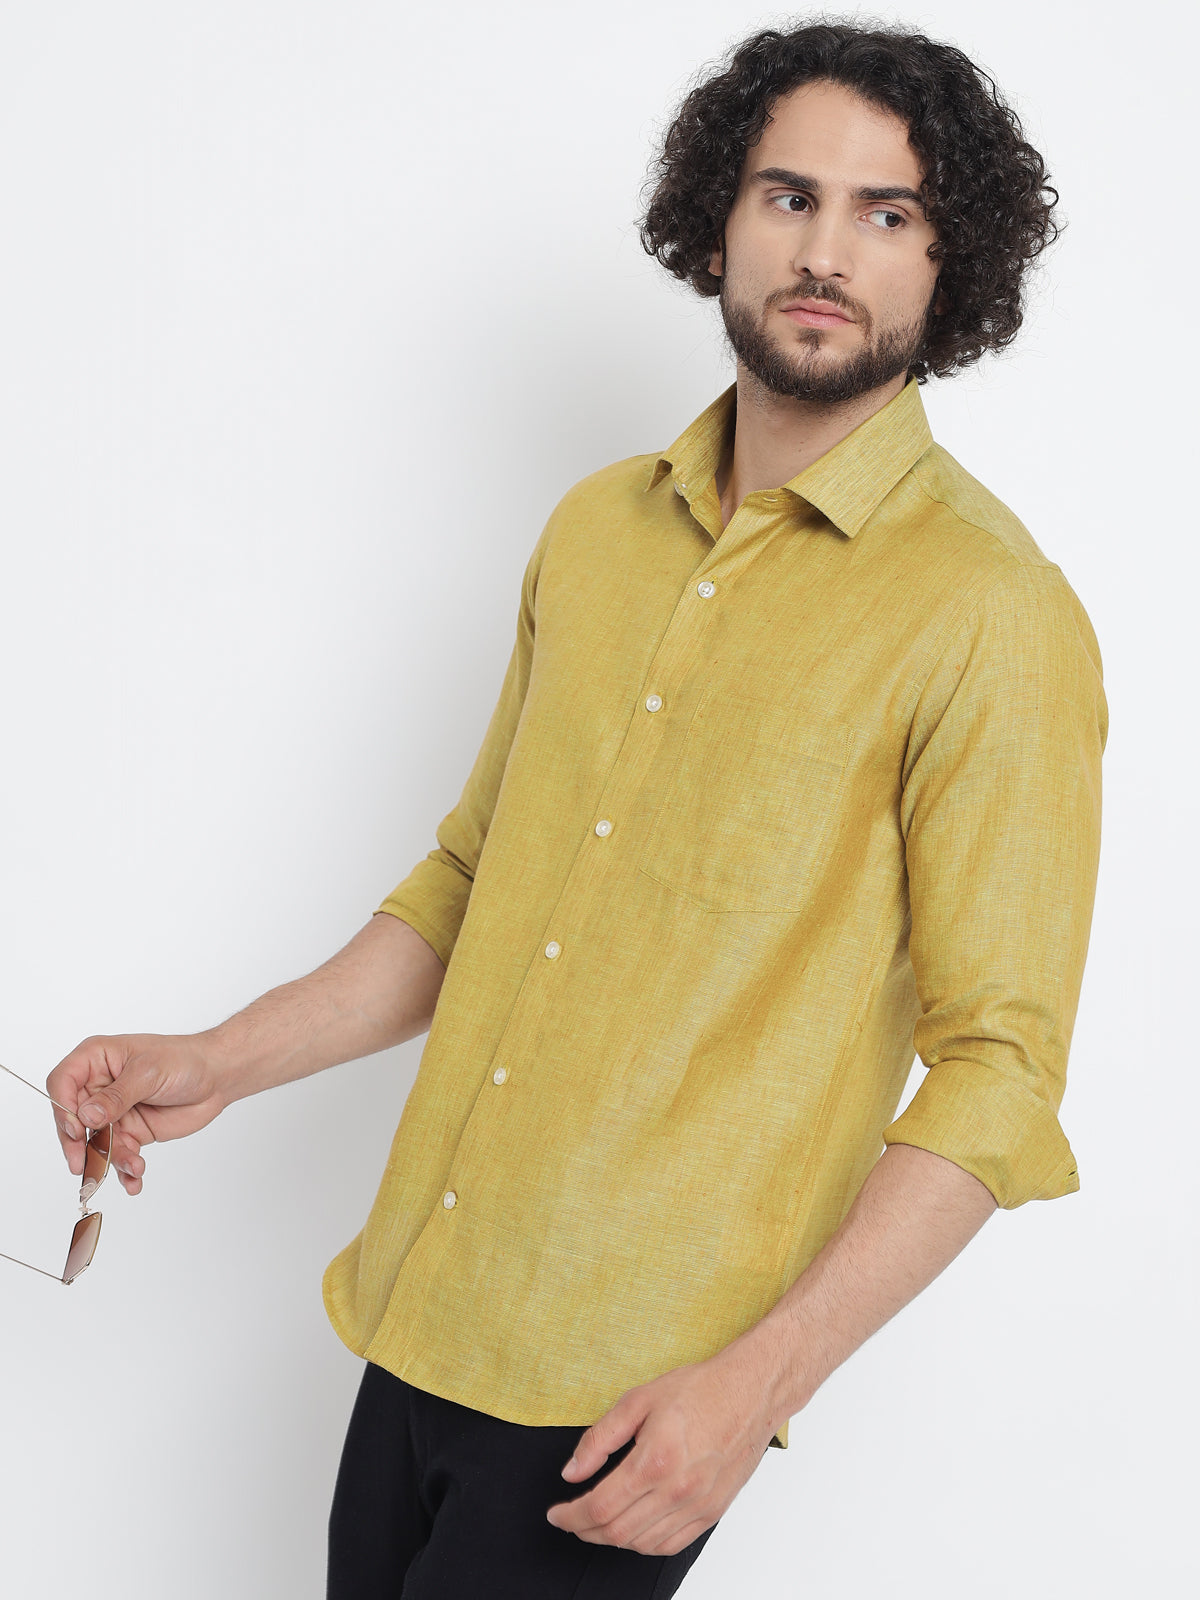 Mustard Yellow Colour Pure Linen Shirt For Men 5